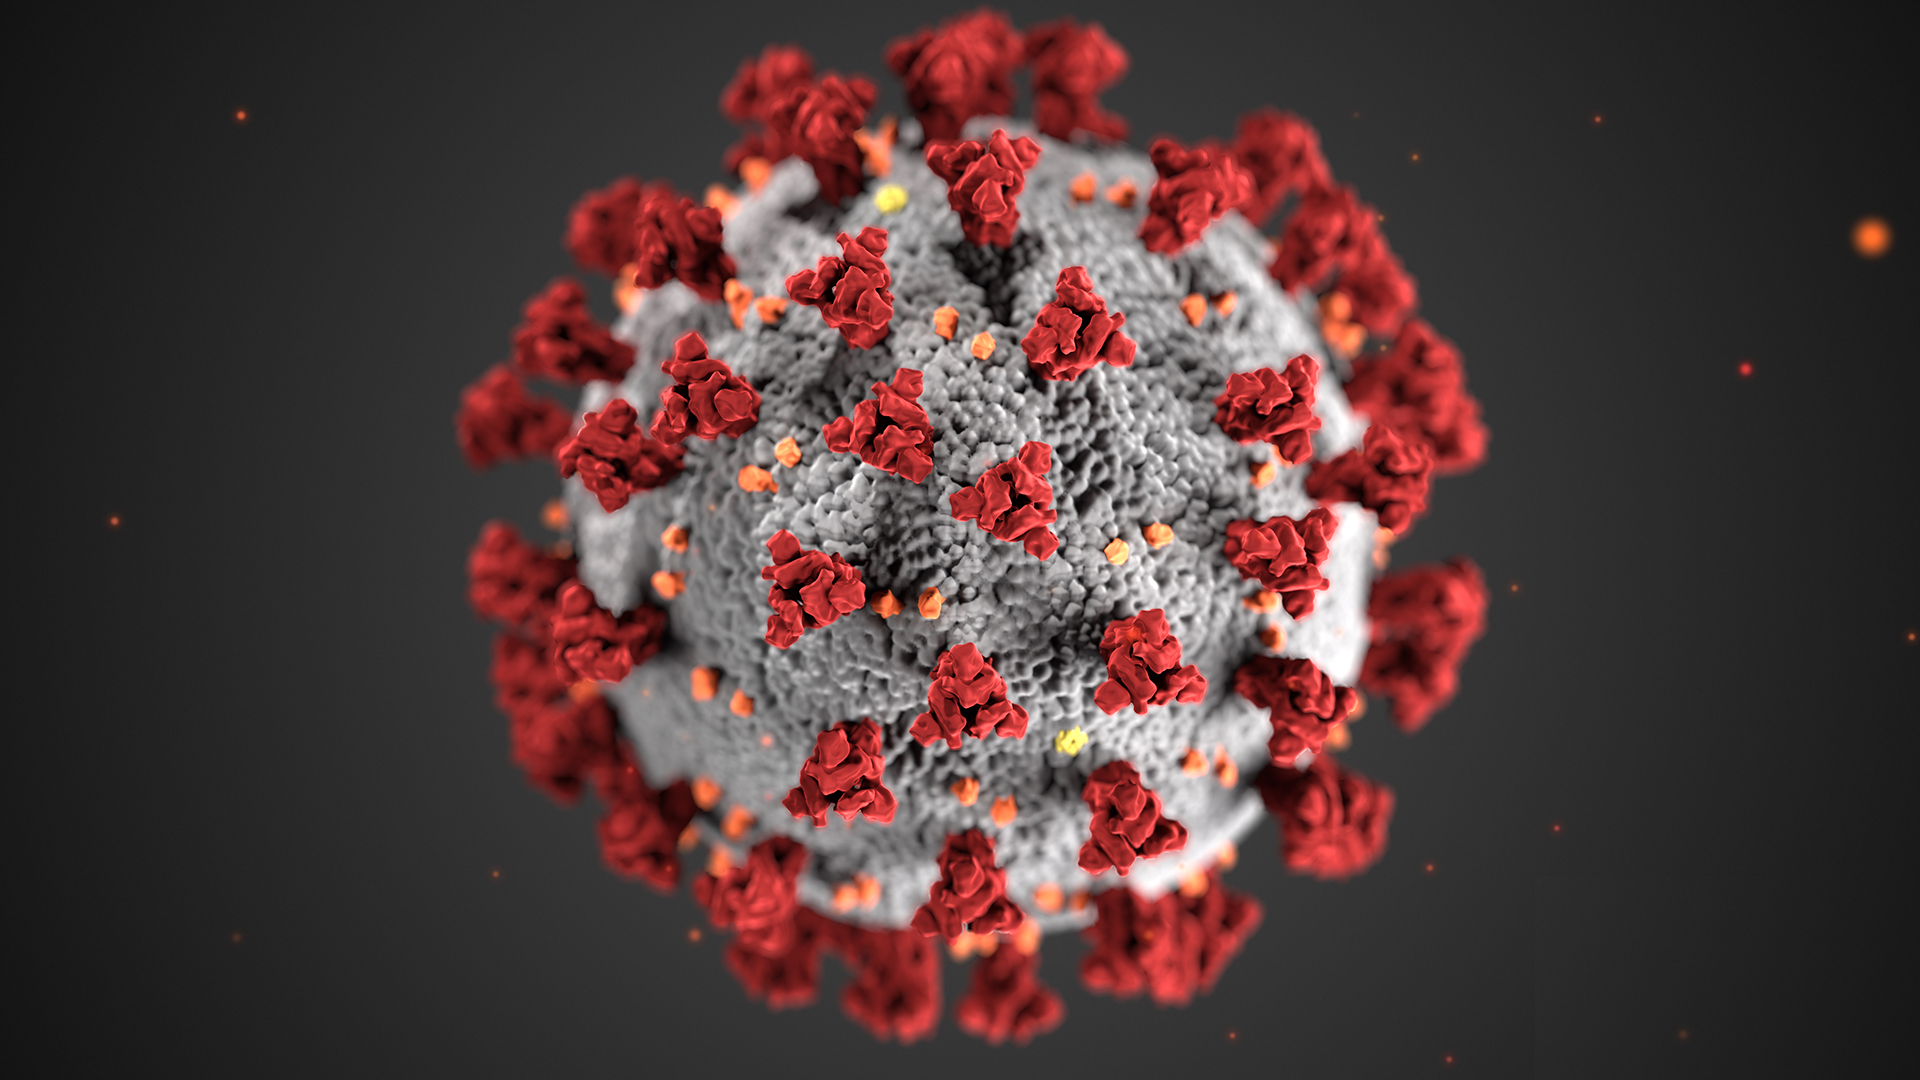 Spremembe v času korona virusa (COVID-19)